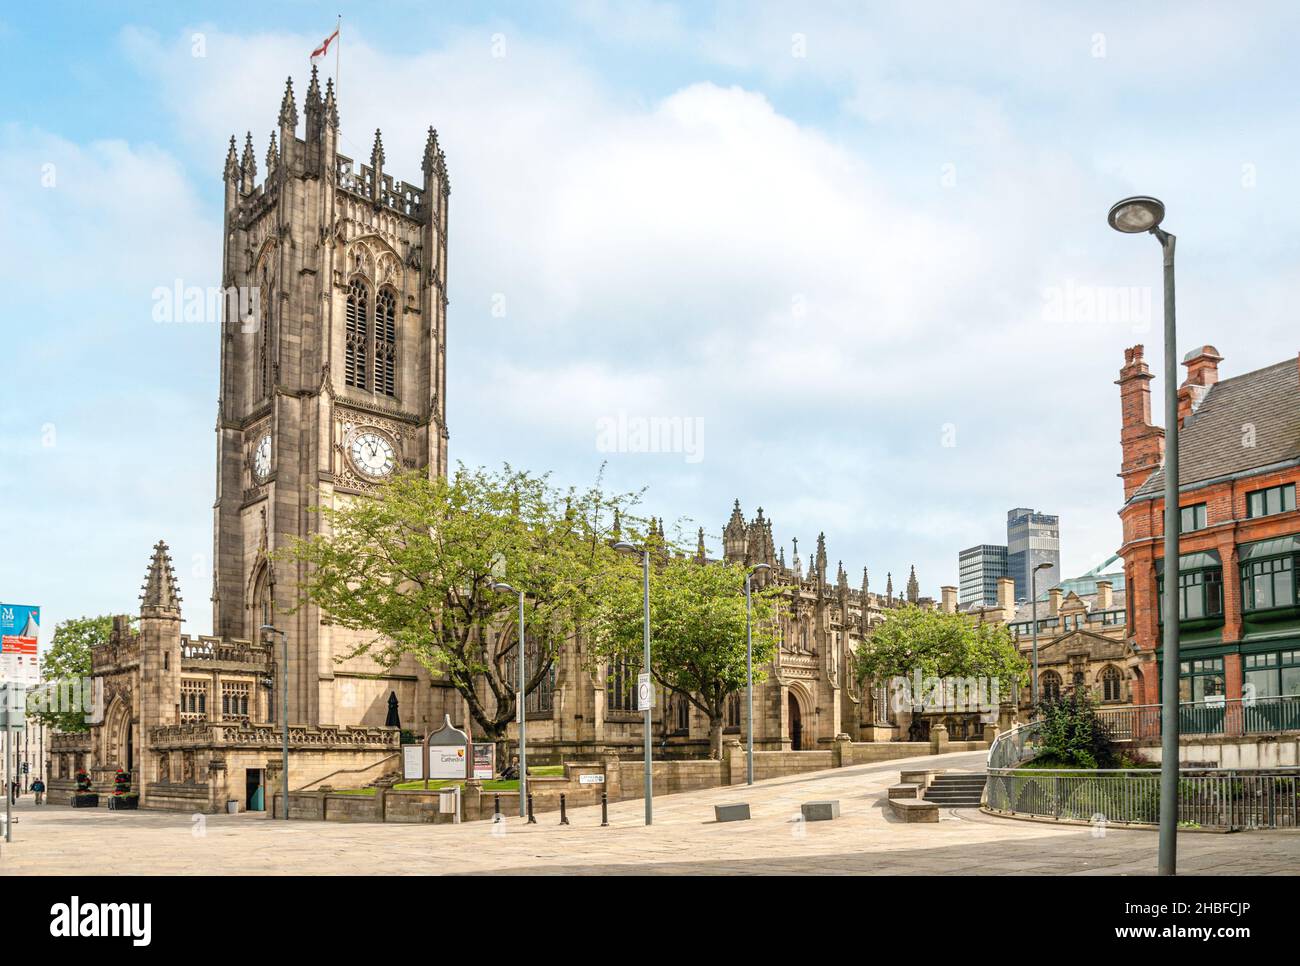 La cathédrale de Manchester est une église médiévale située sur Victoria Street dans le centre de Manchester. Banque D'Images